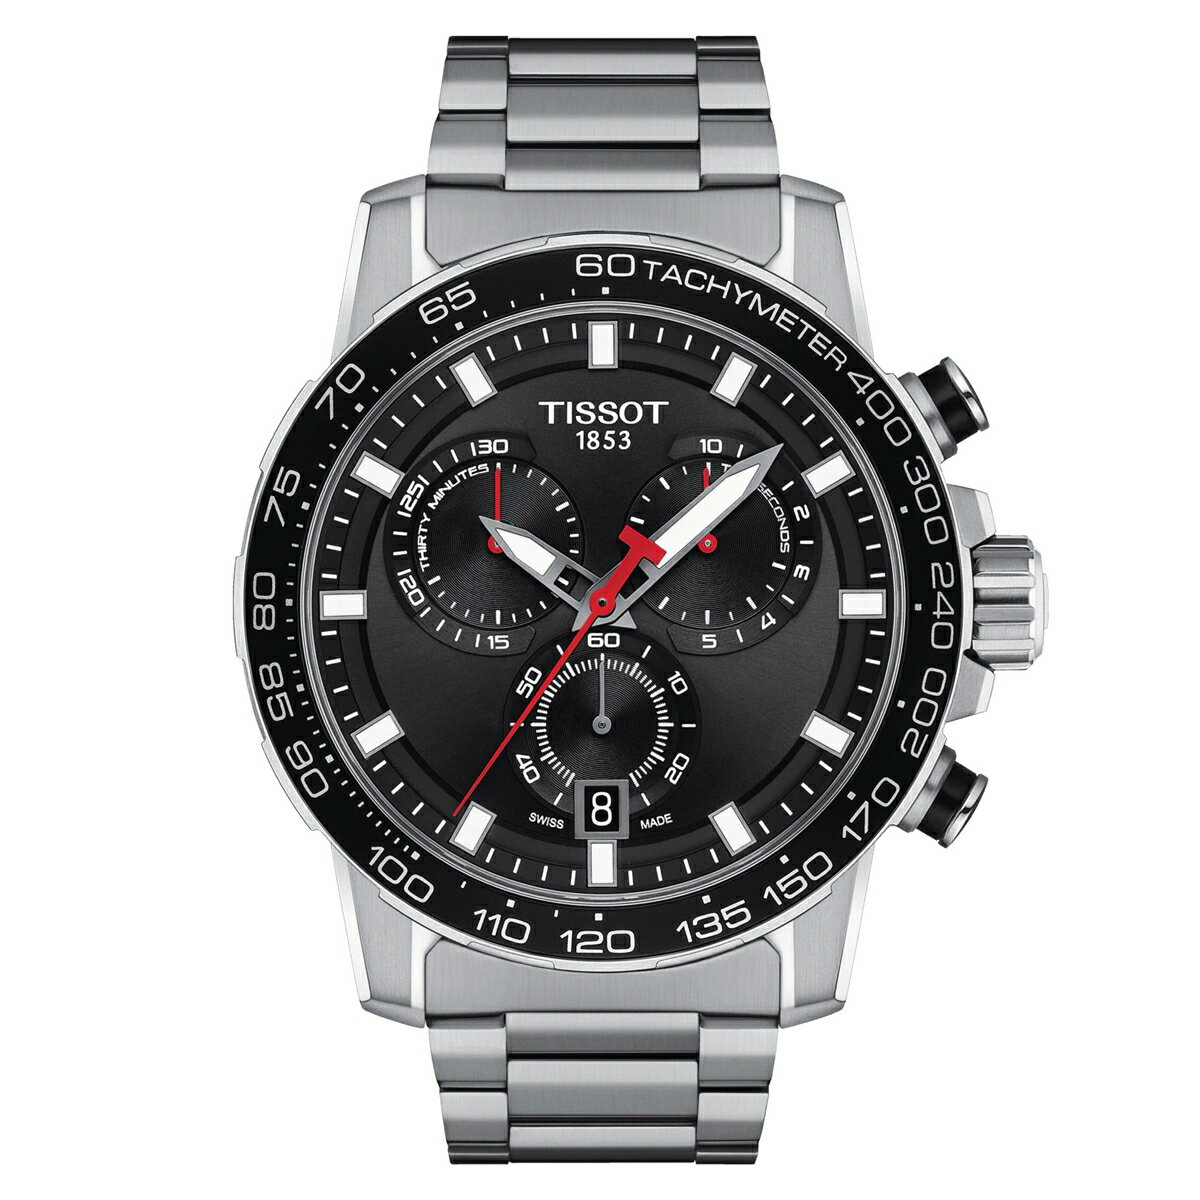 ティソ TISSOT T125.617.11.051.00 T-スポーツ スーパースポーツ クロノ 国内正規品 腕時計